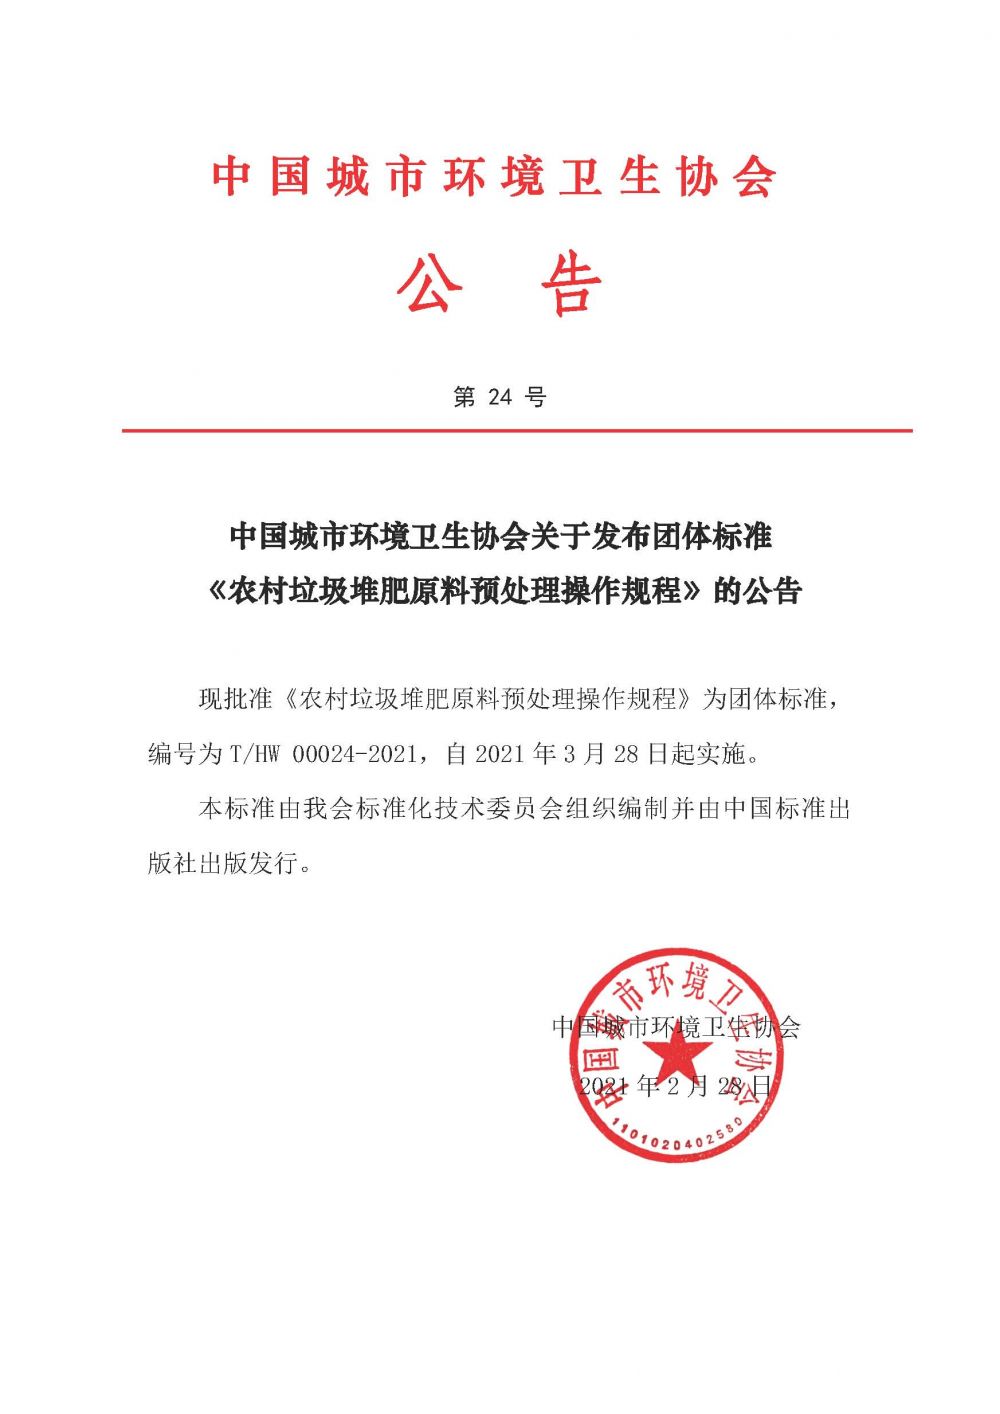 公告第24号中国城市环境卫生协会关于发布团体标准《农村垃圾堆肥原料预处理操作规程》的公告.jpg